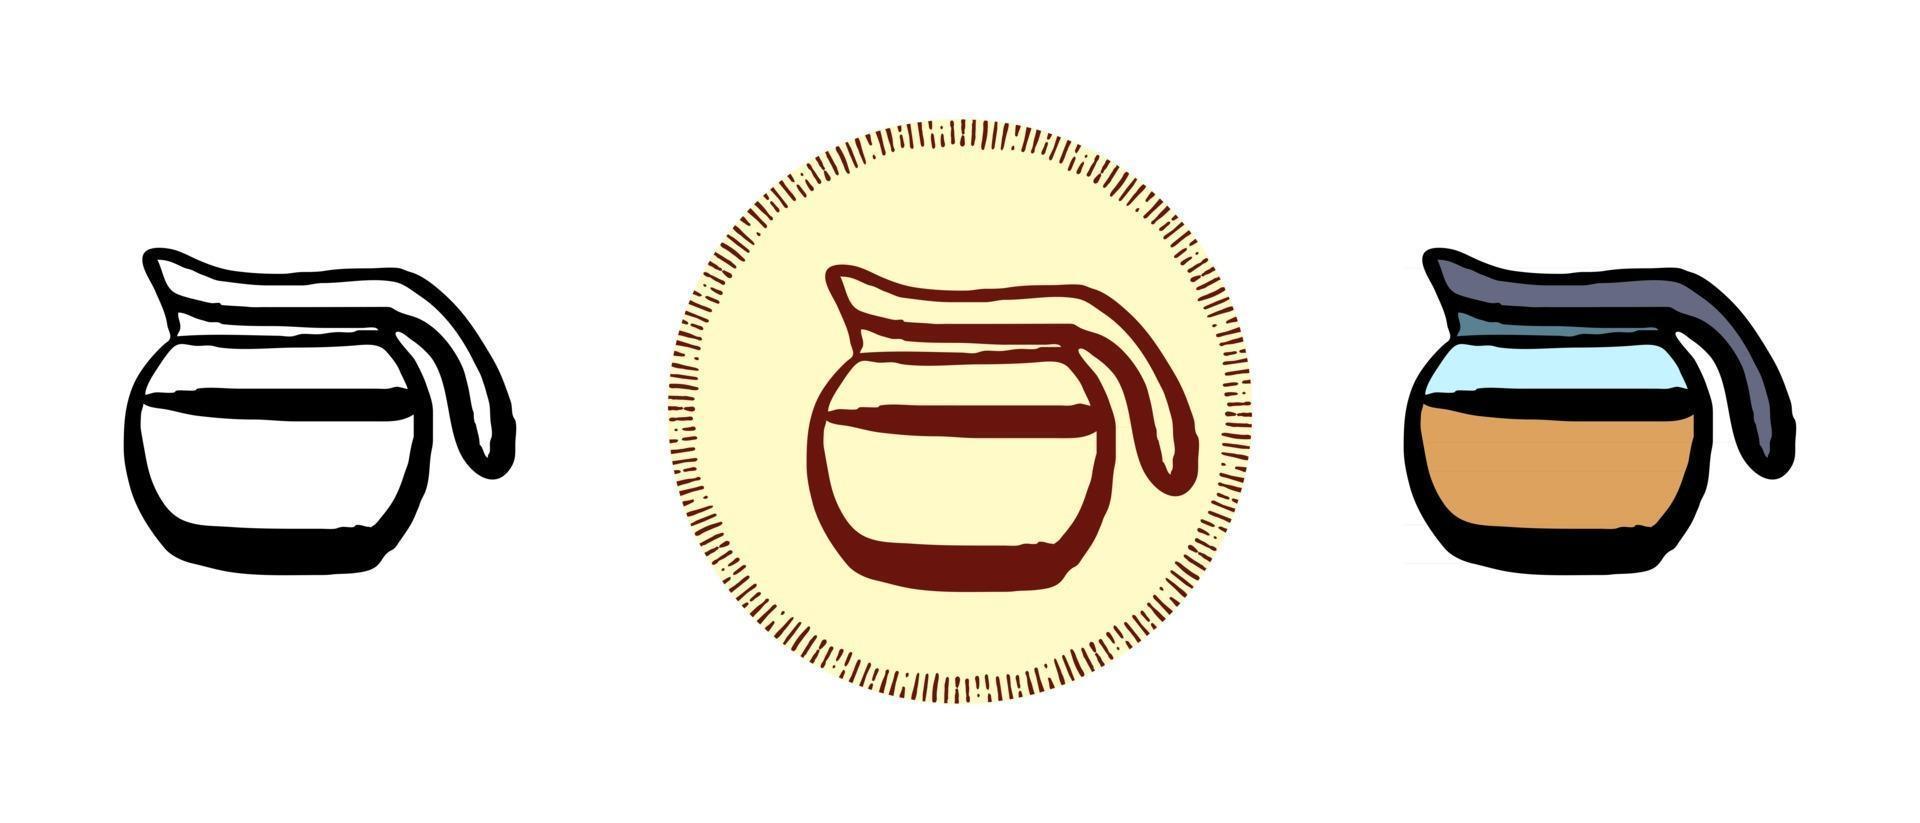 Contour color and retro symbols of a jug with coffee vector